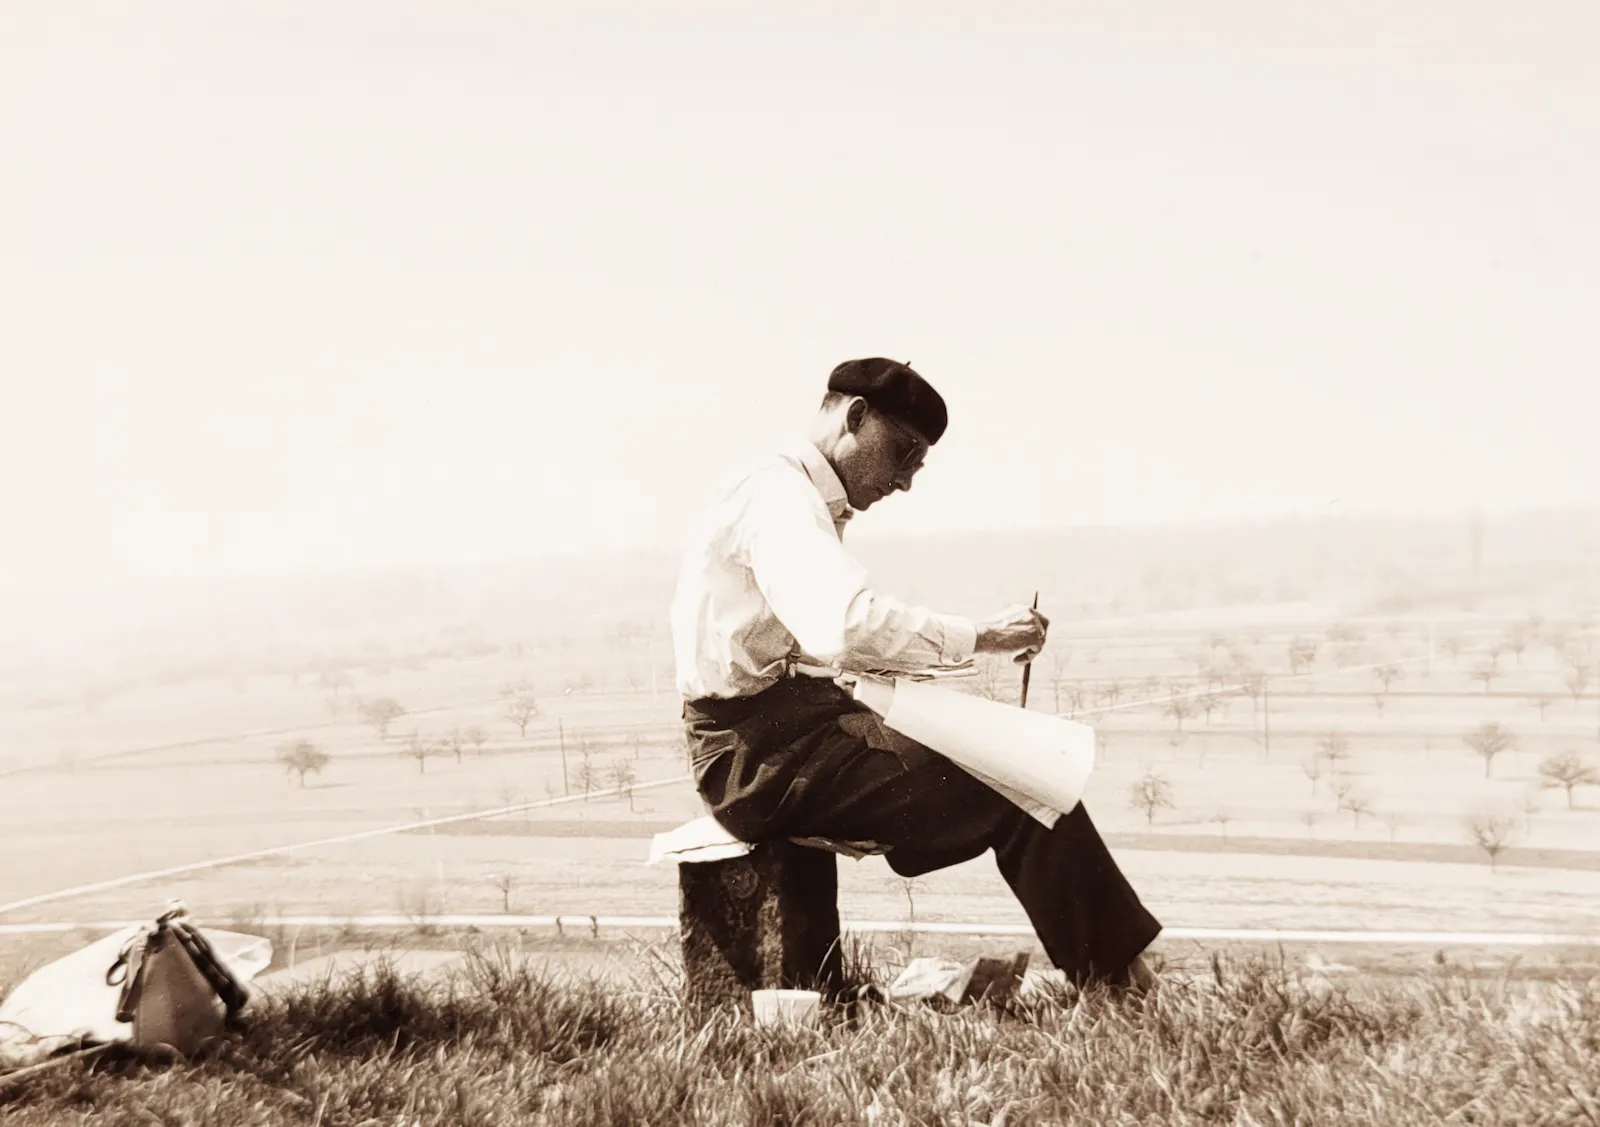 Mann im Profil mit Pinsel und Zeichenpapier sitzt in einer weiten Landschaft.